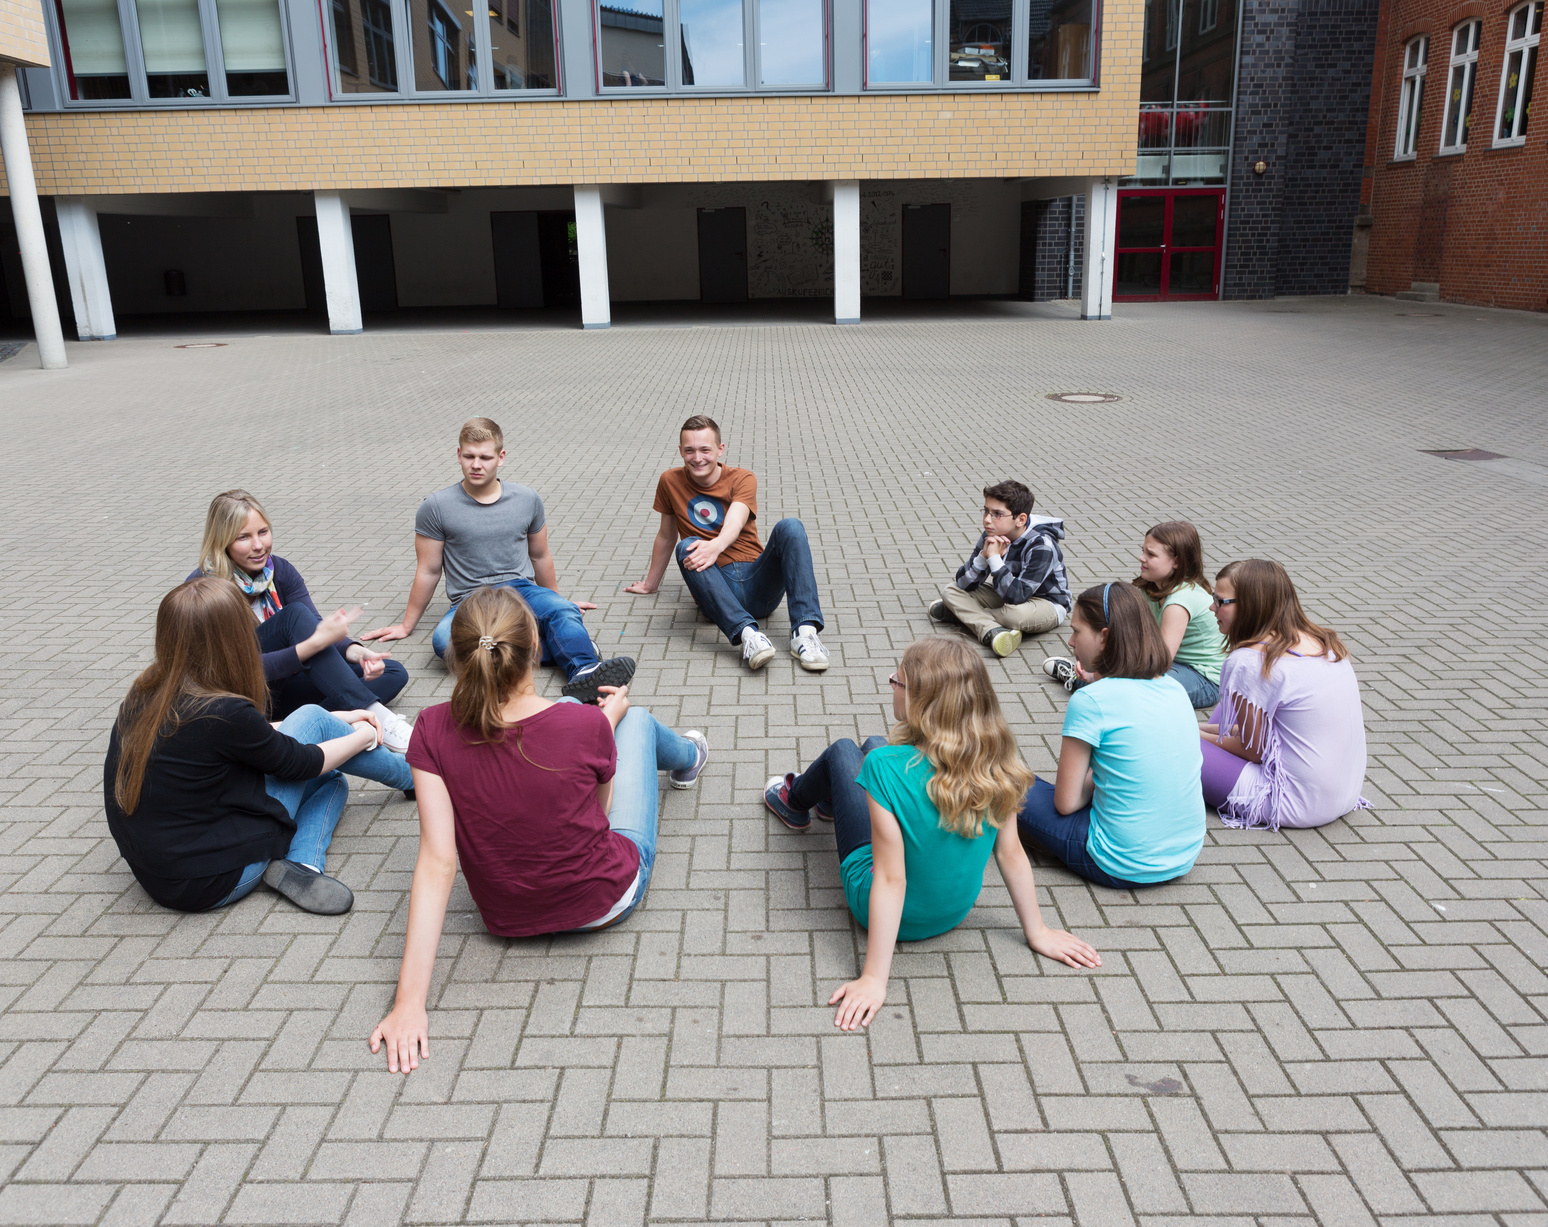 Schüler sitzen im Schulhof, der komplett mit grauen Betonsteinen zugepflastert ist